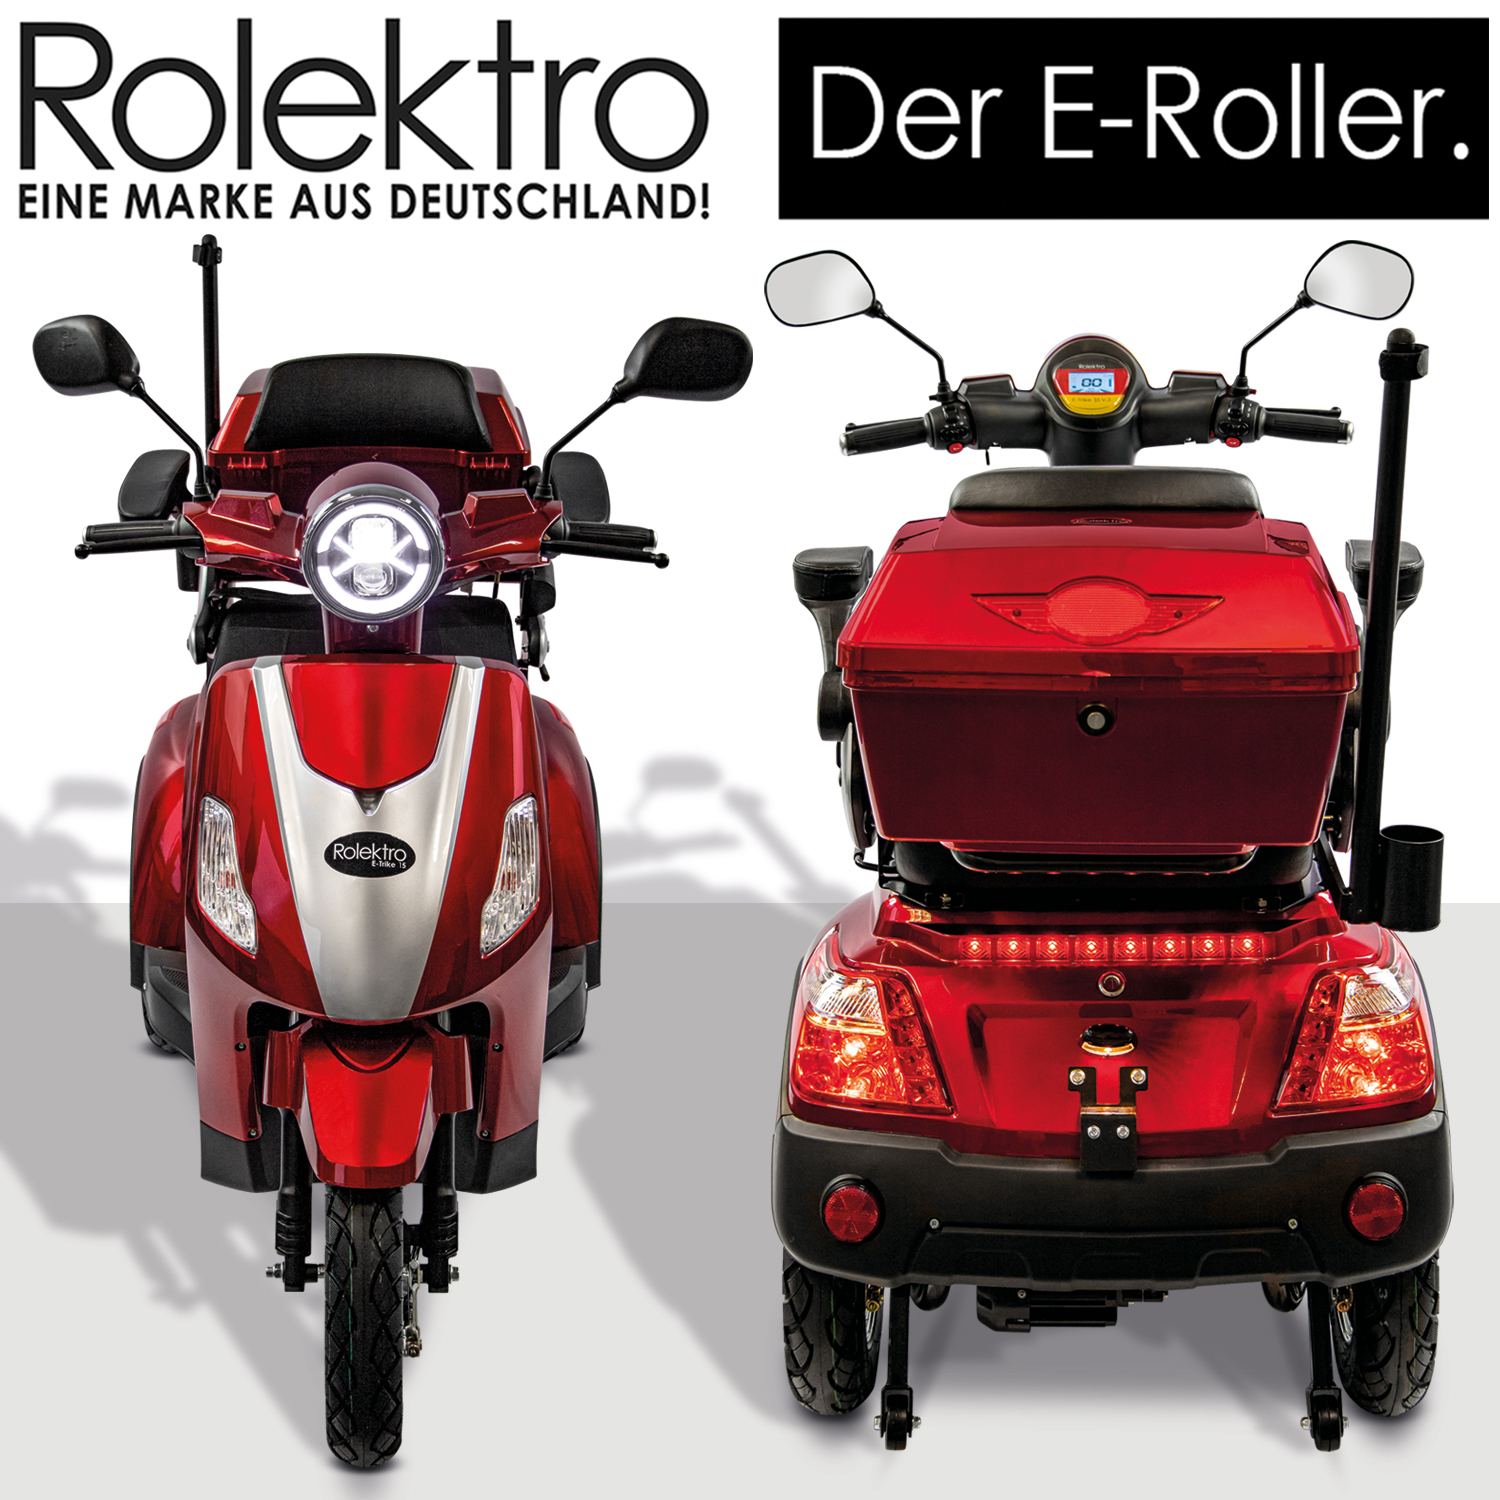 1000 Seniorenmobil | | Akkus, Seniorenmobile 3 Rolektro, 60V-20Ah 25 Rad V.2, Watt E-Trike Bleigel